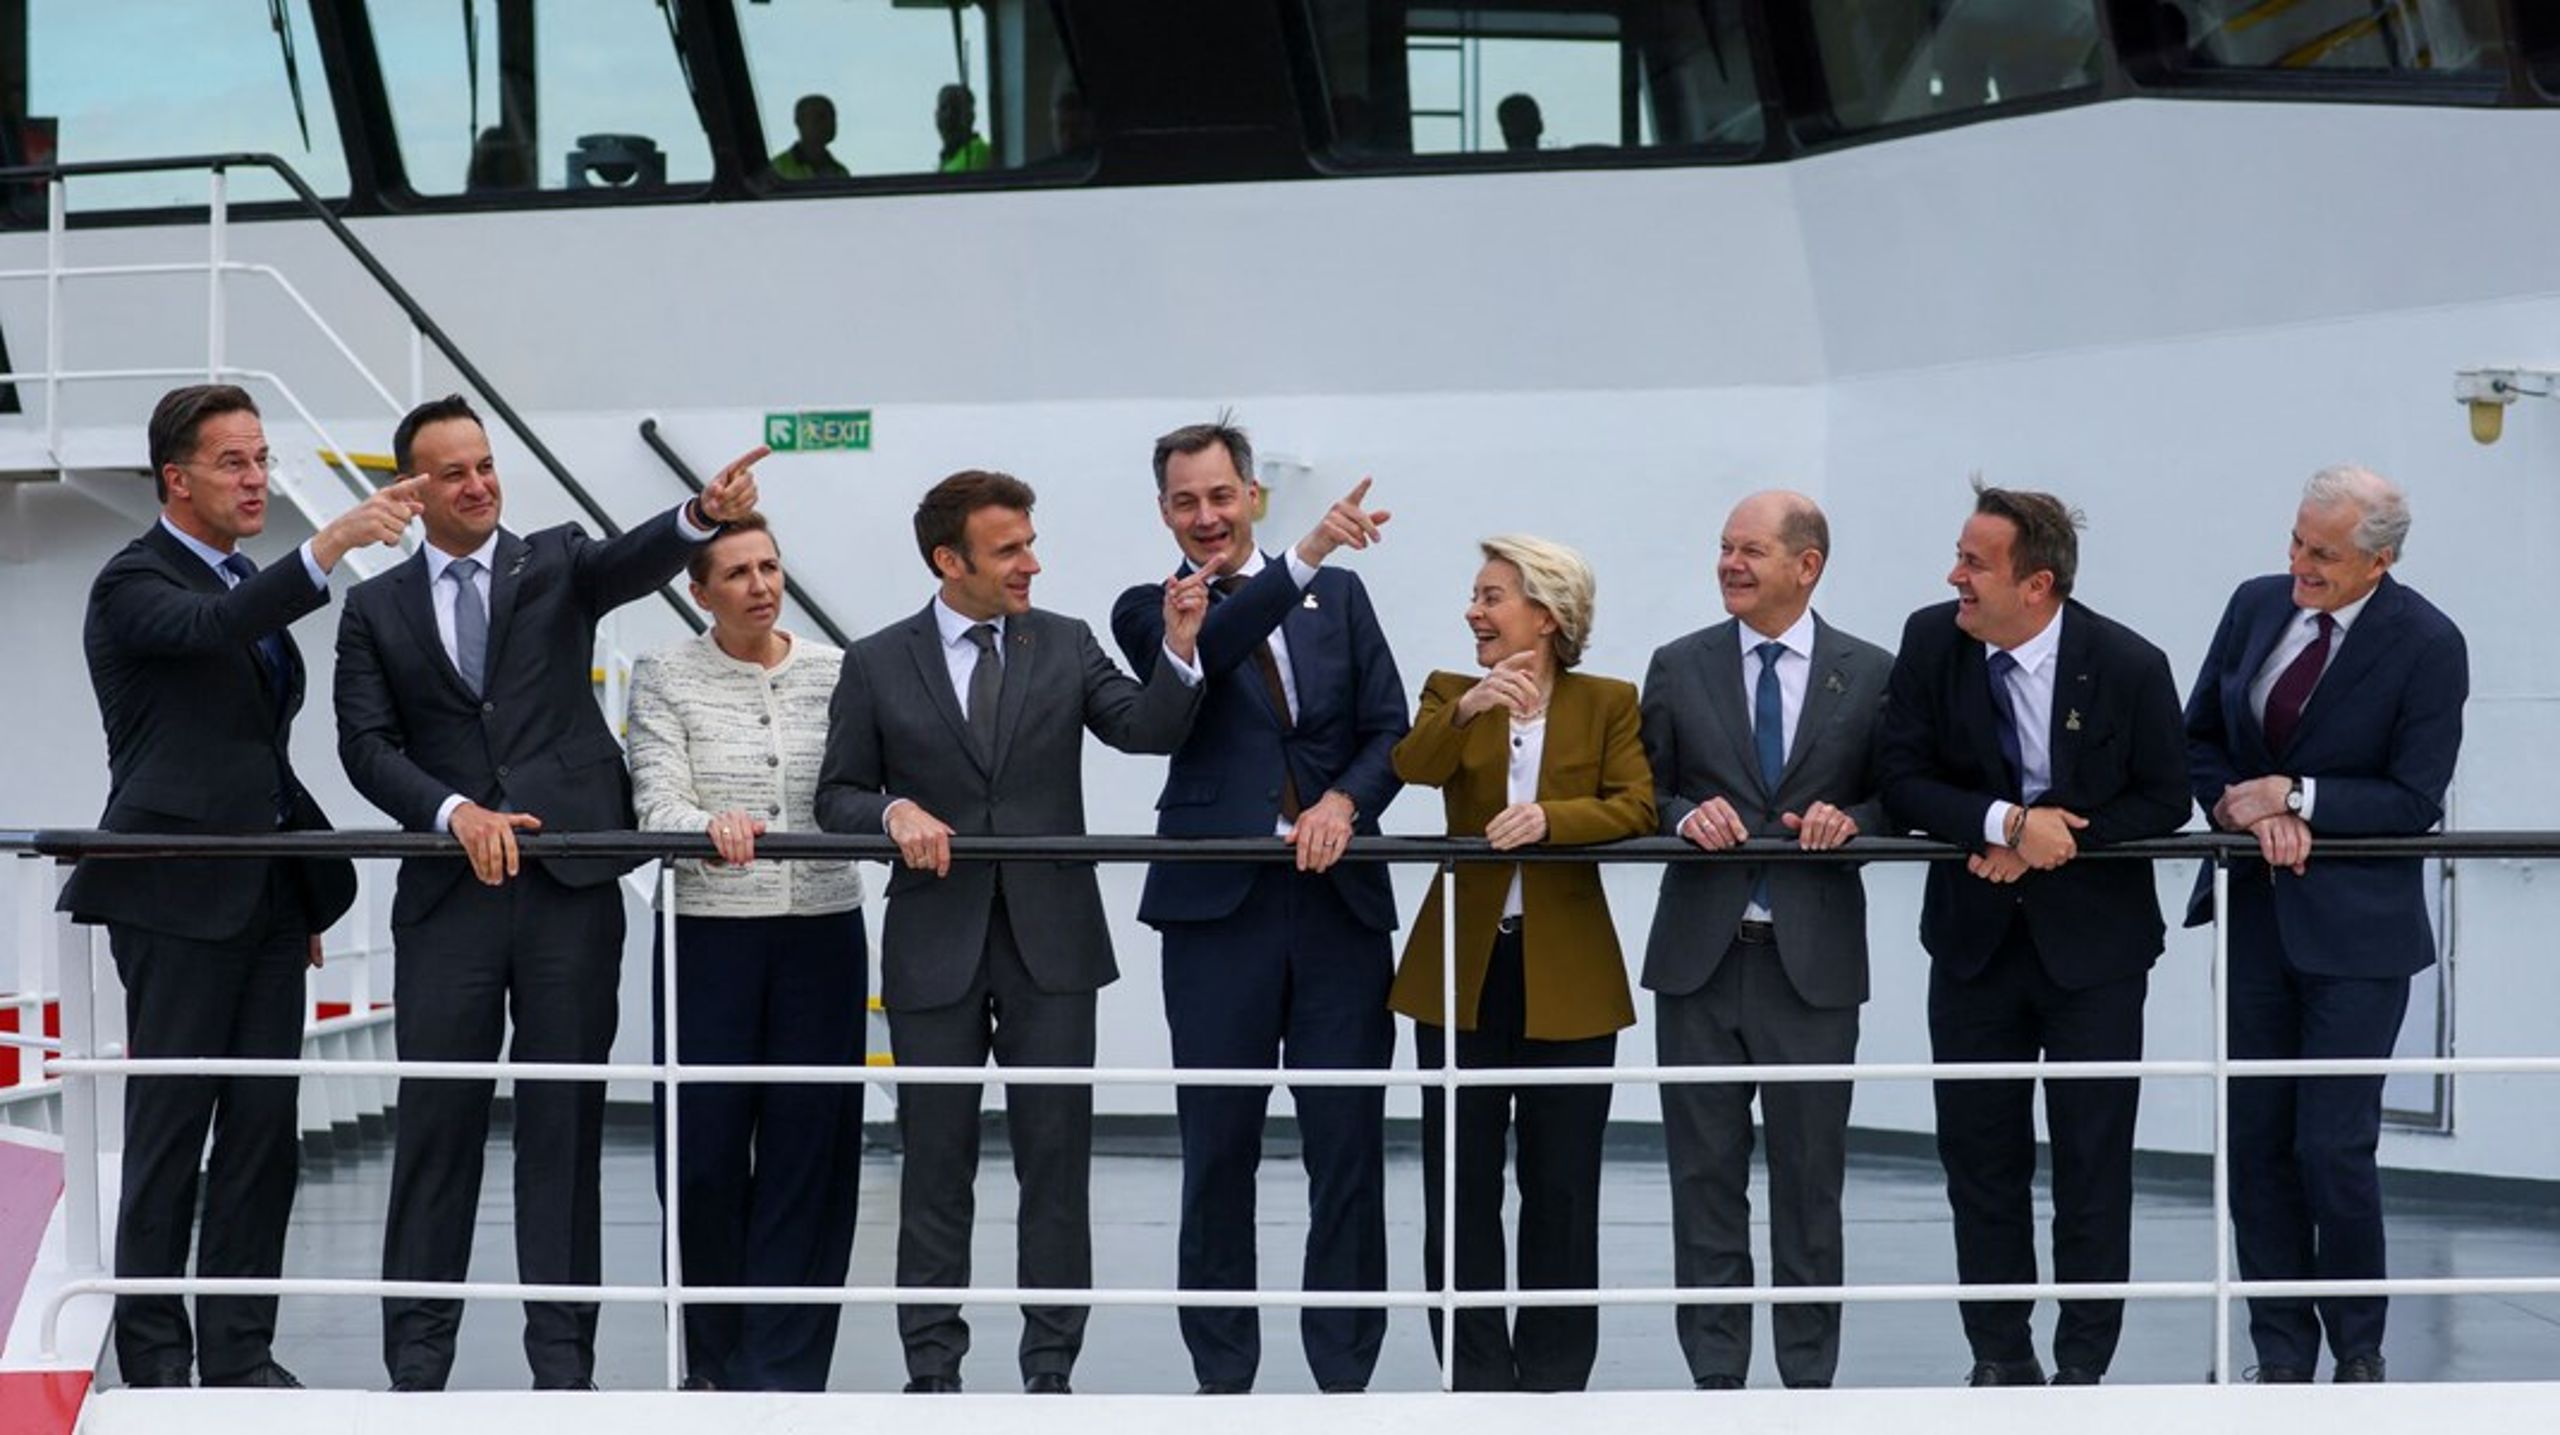 Der blev peget mod nye ambitiøse mål for havvindmøller, da en række stats- og regeringschefer fra&nbsp;Nordsølande mødtes til "vindtopmøde" i Belgien 24. april.&nbsp;